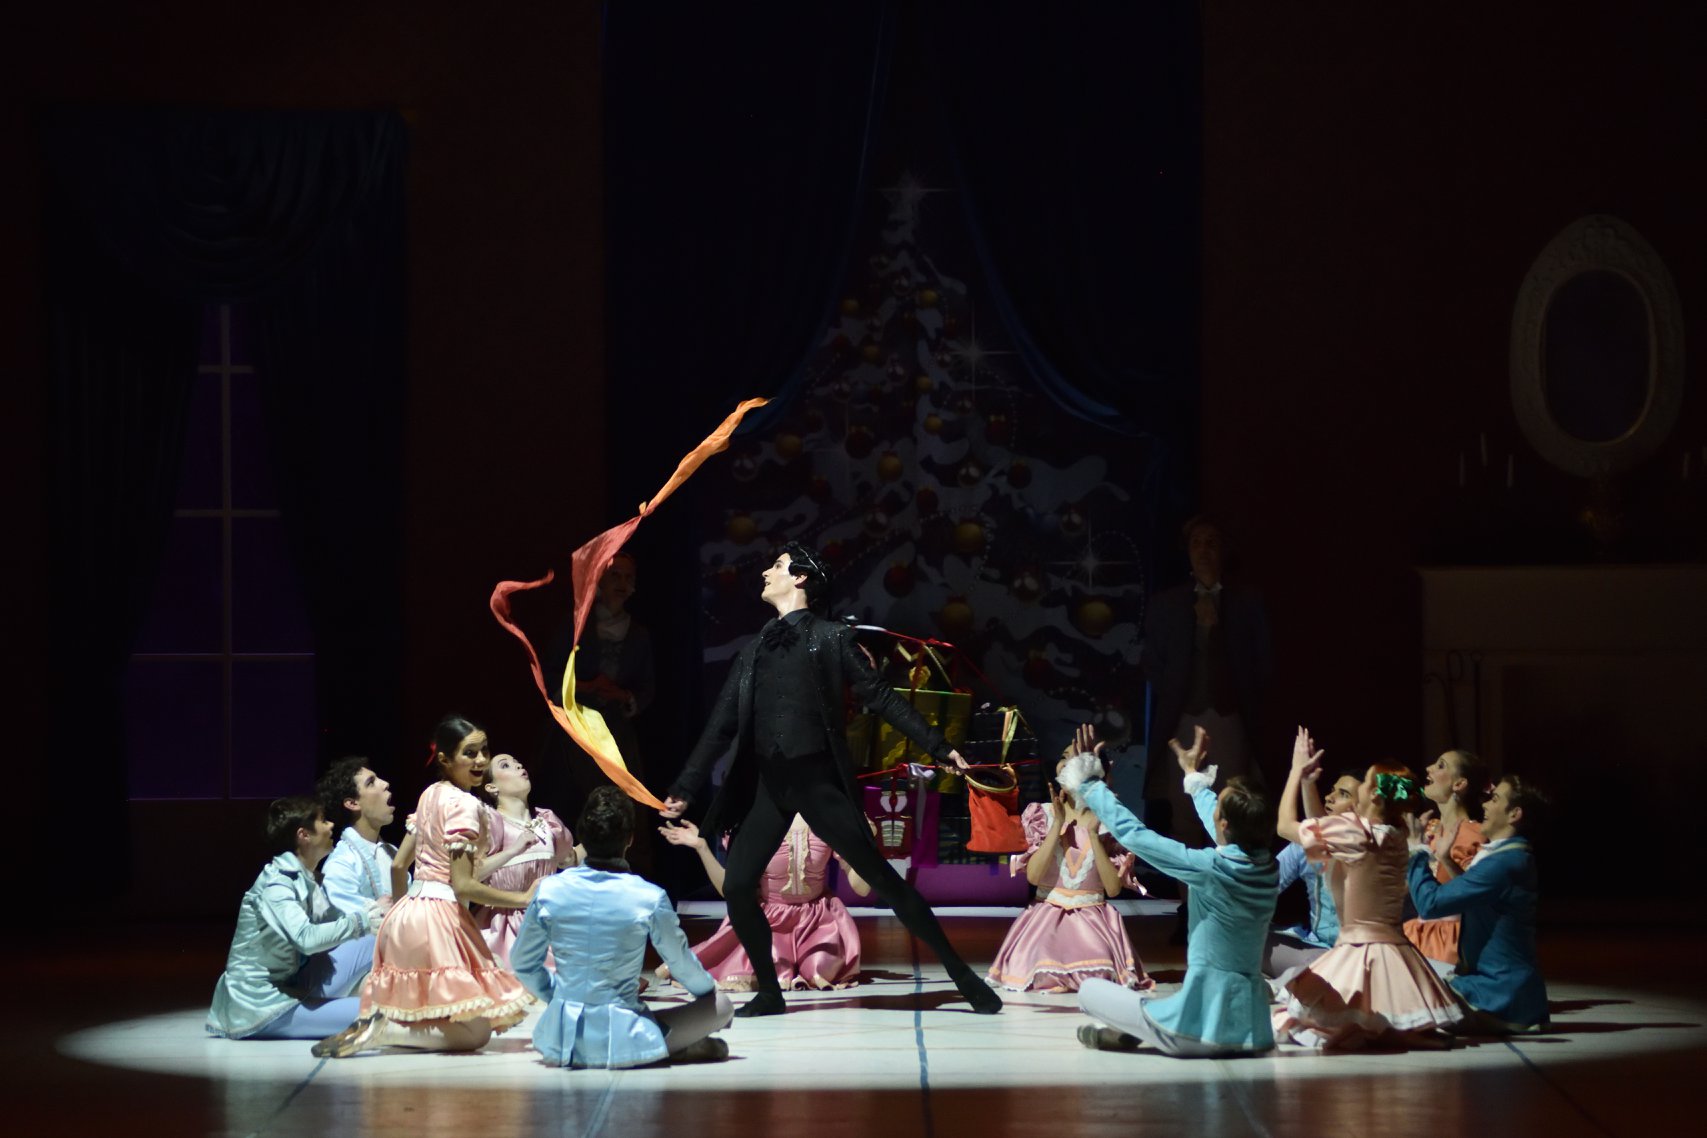 Două capodopere, o singură scenă: Nunta lui Figaro și Spărgătorul de nuci la Opera Națională București